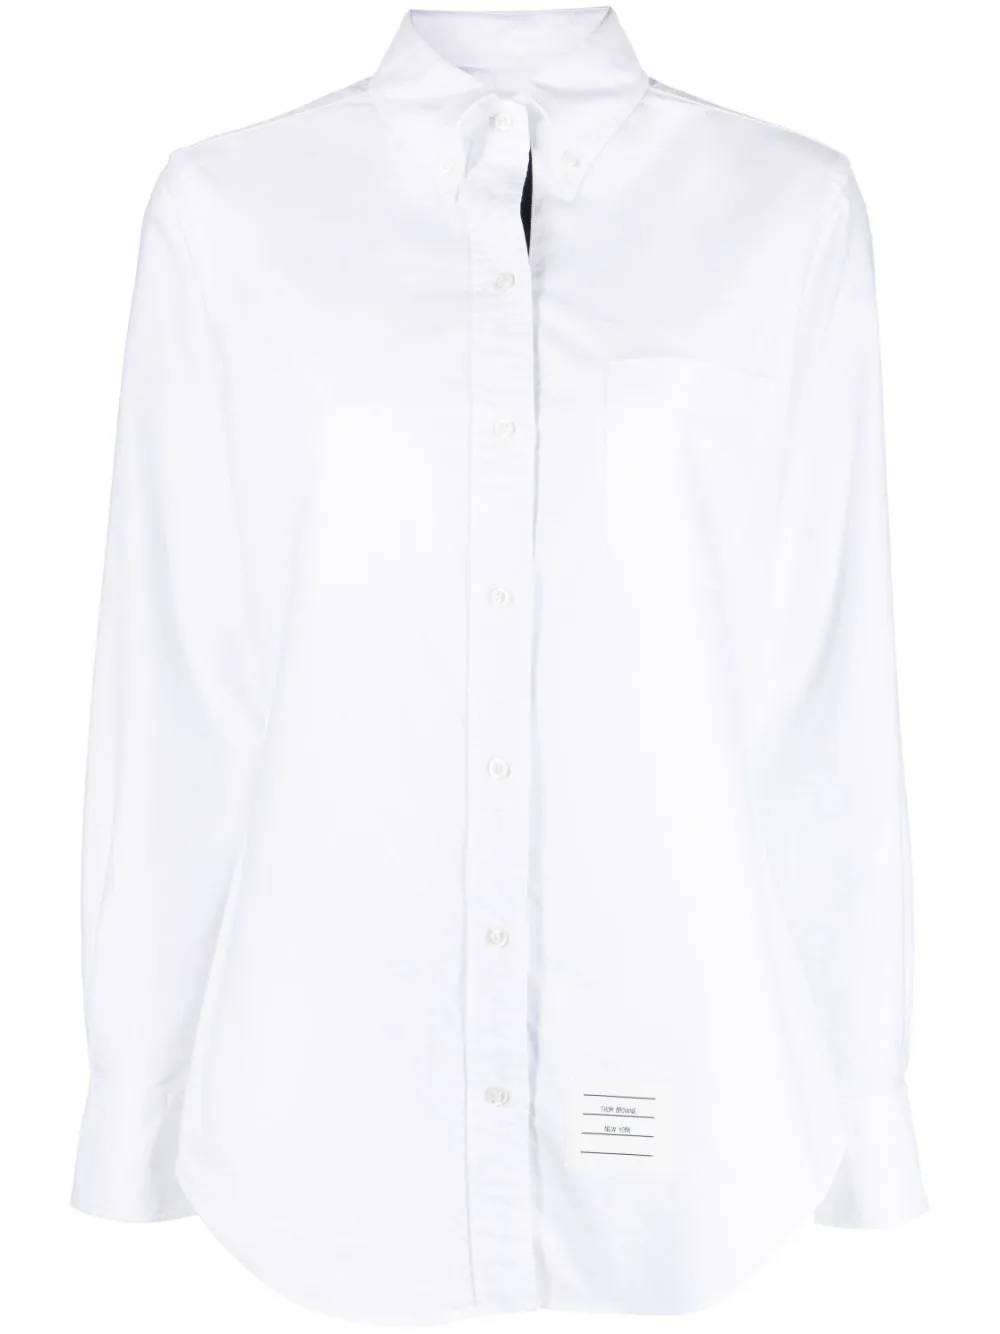 Logo Patch Button Down Shirt (White)